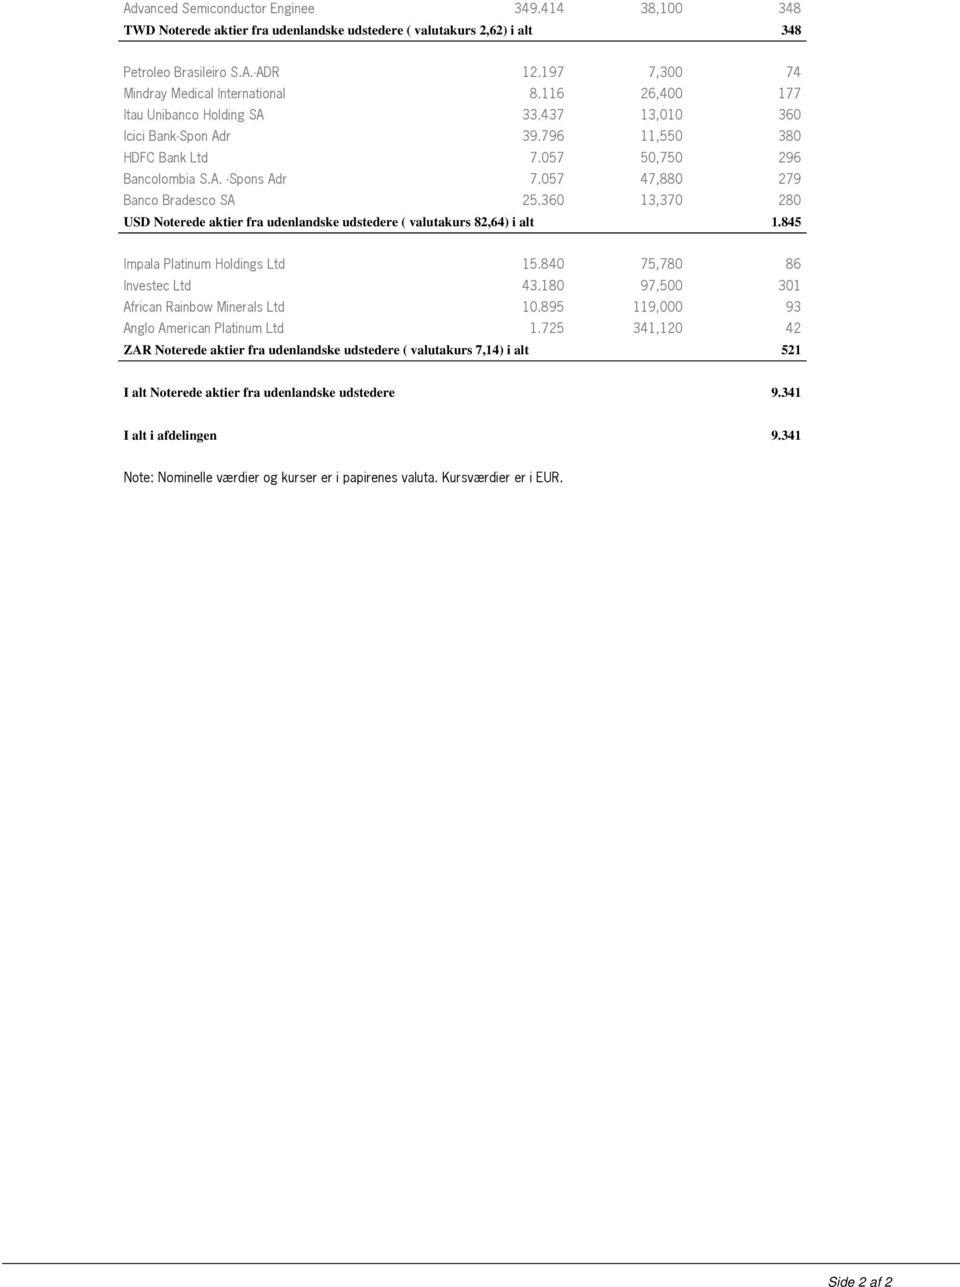 057 47,880 279 Banco Bradesco SA 25.360 13,370 280 USD Noterede aktier fra udenlandske udstedere ( valutakurs 82,64) i alt 1.845 Impala Platinum Holdings Ltd 15.840 75,780 86 Investec Ltd 43.